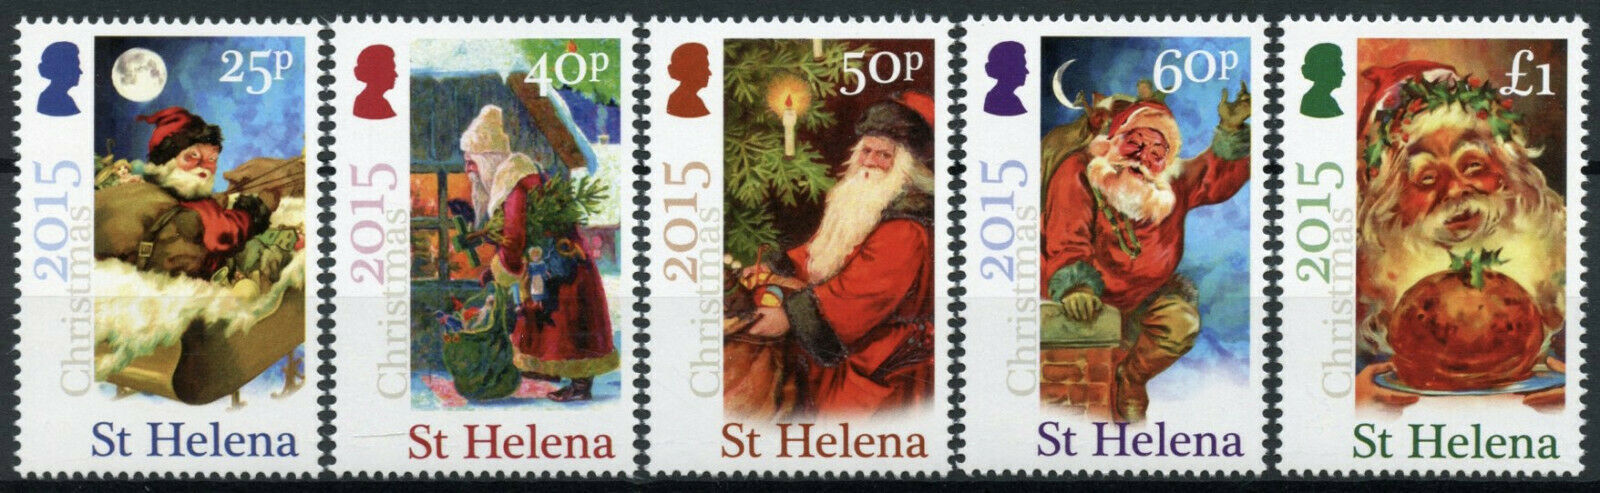 St Helena Christmas Stamps 2015 MNH Father Christmas Tree 5v Set